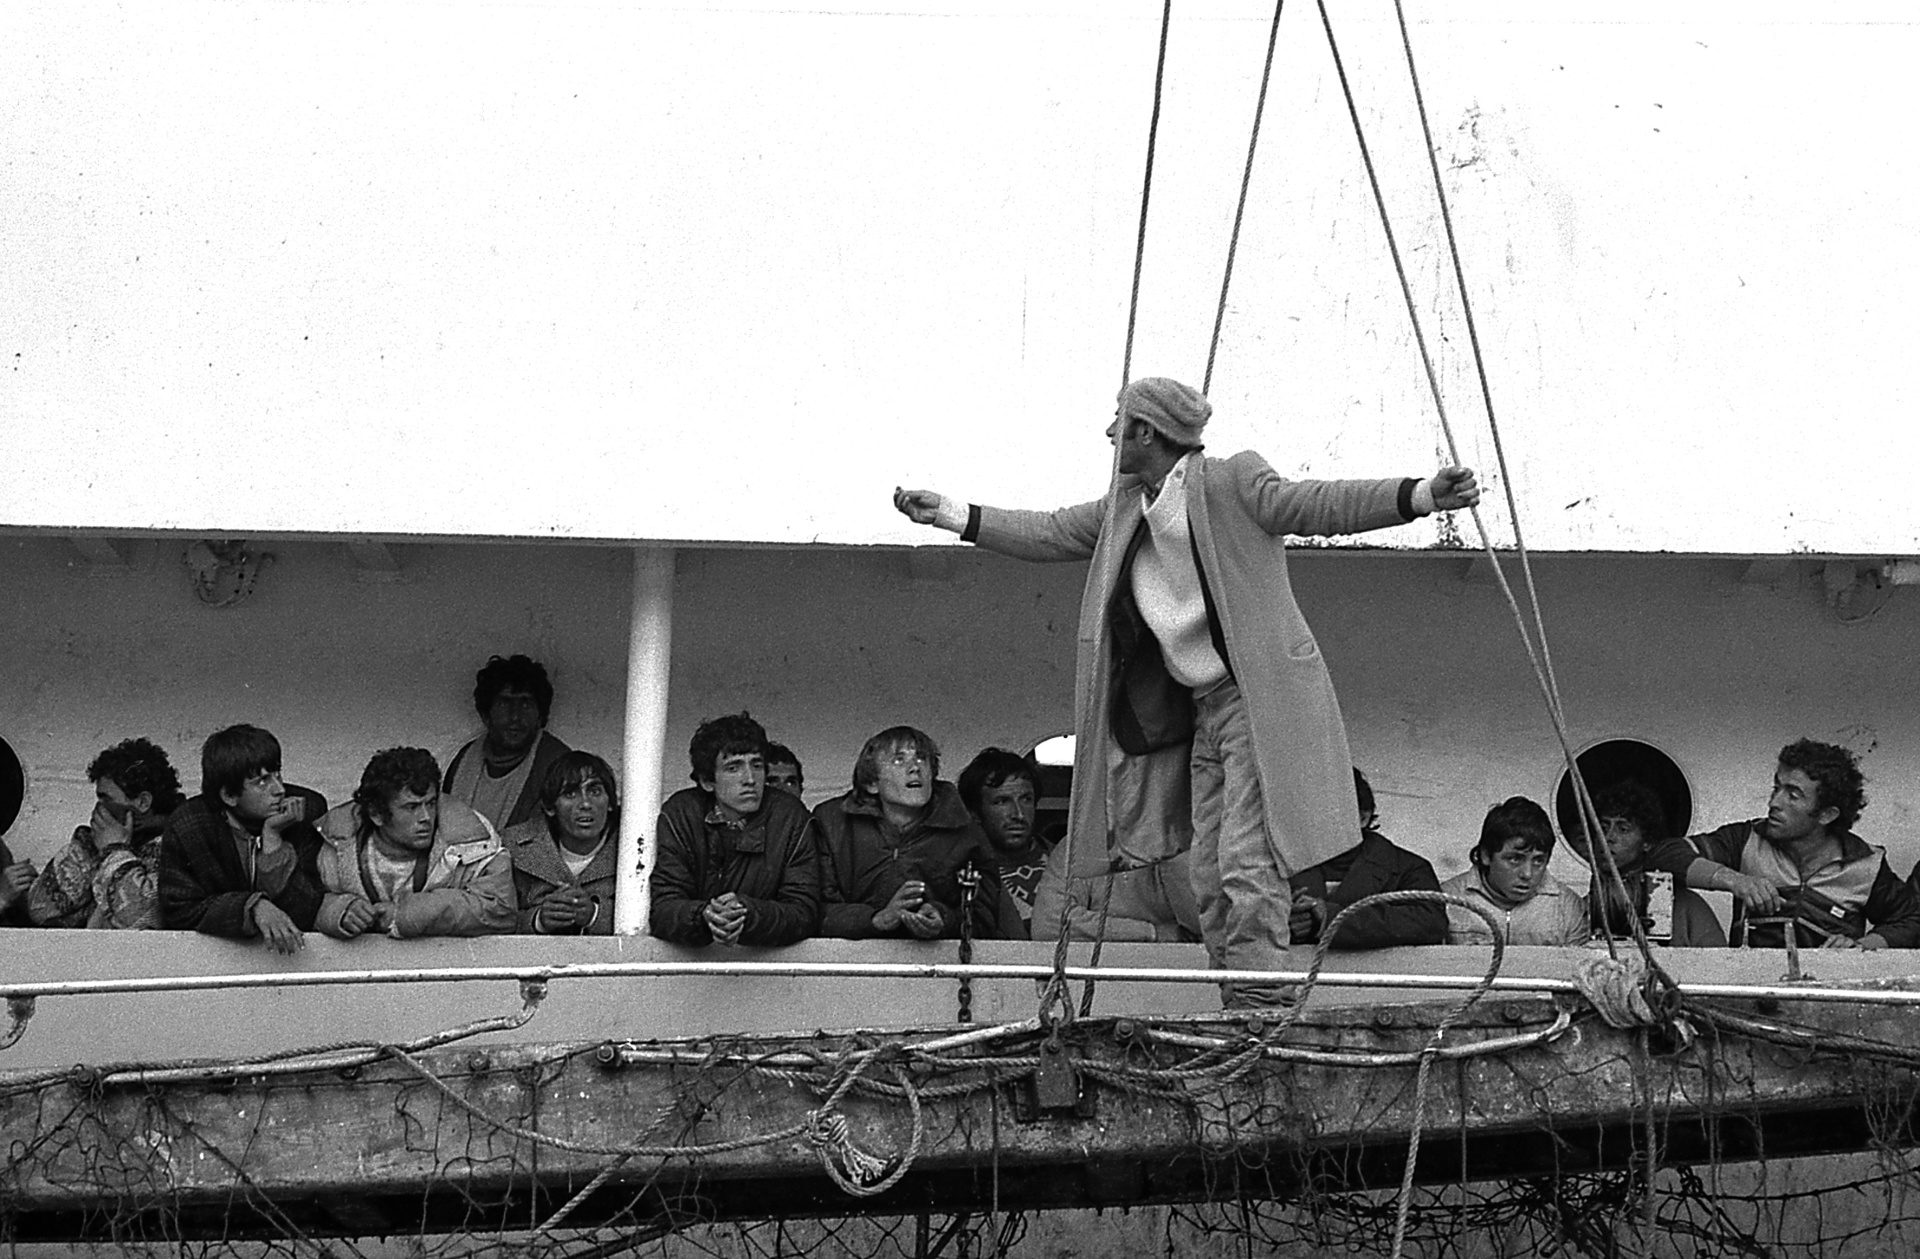 Primi sbarchi di profughi albanesi in Italia - marzo 1991, ITA Brindisi. Marzo 1991. A bordo di navi mercantili arrivarono migliaia di migranti. Dopo il crollo del Muro di Berlino la crisi aveva colpito anche gli albanesi. un esodo biblico. Fuggivano dal